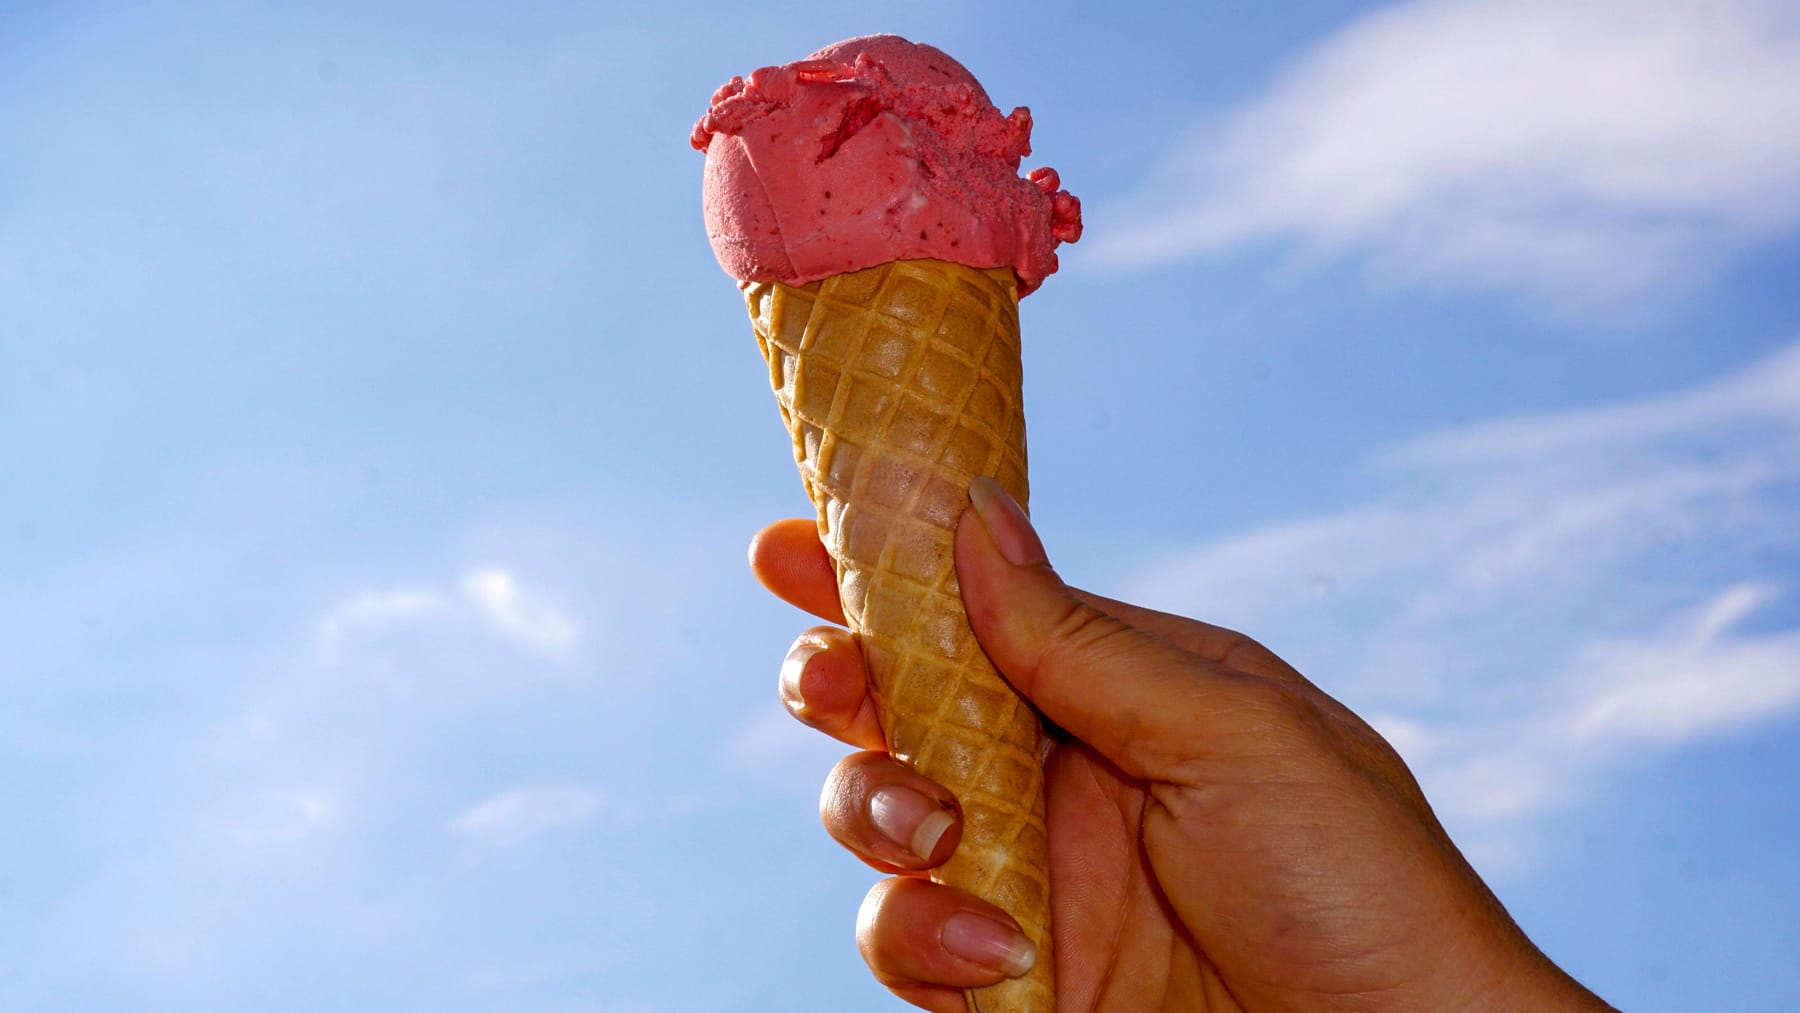 Nel fine settimana la gelateria fa pagare dieci centesimi per una pallina di gelato